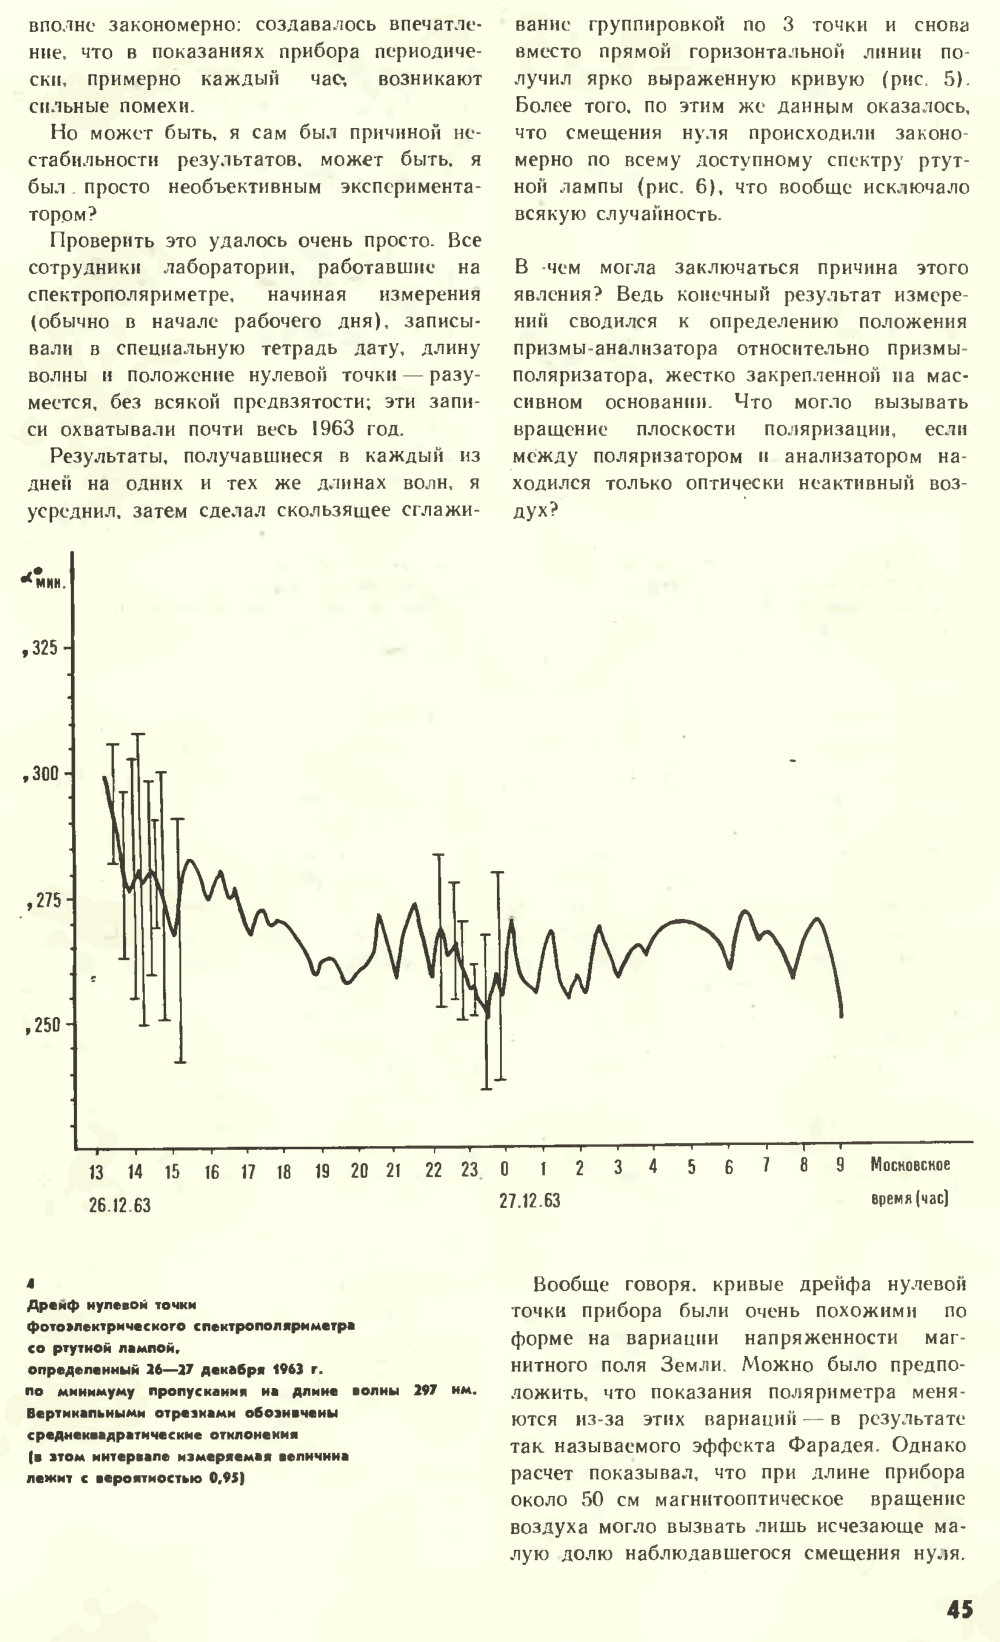 Что нарушает симметрию? В.Е. Жвирблис. Химия и жизнь, 1977, №12, с.42-49. Фотокопия №4